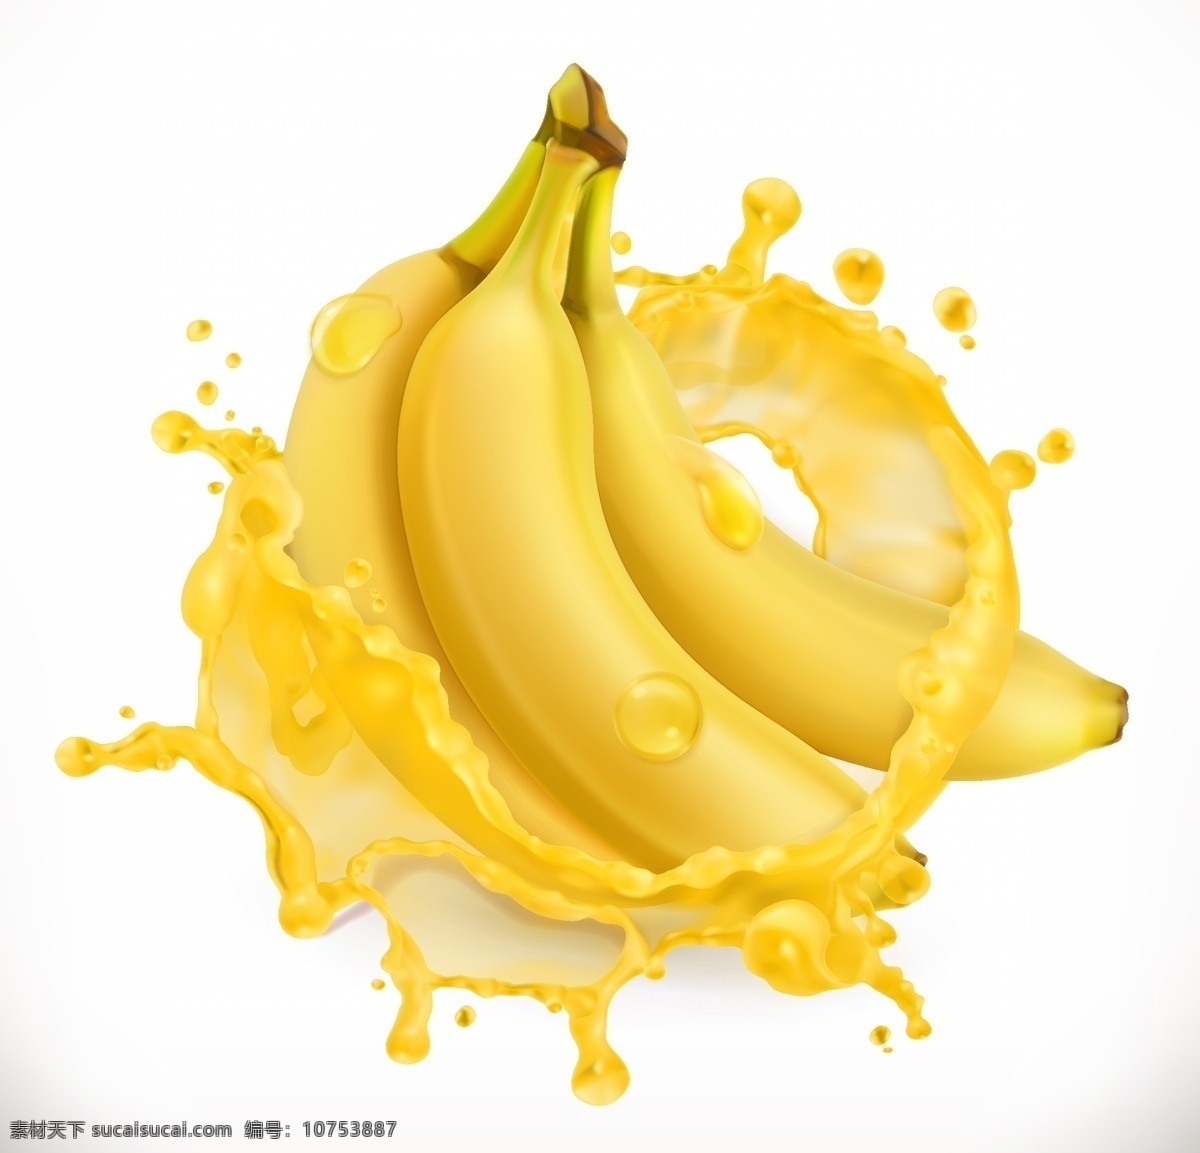 香蕉汁 香蕉 矢量香蕉 手绘香蕉 香蕉插画 卡通香蕉 逼真香蕉 香蕉广告 水果元素 水果广告 水果素材 食物 生物世界 水果